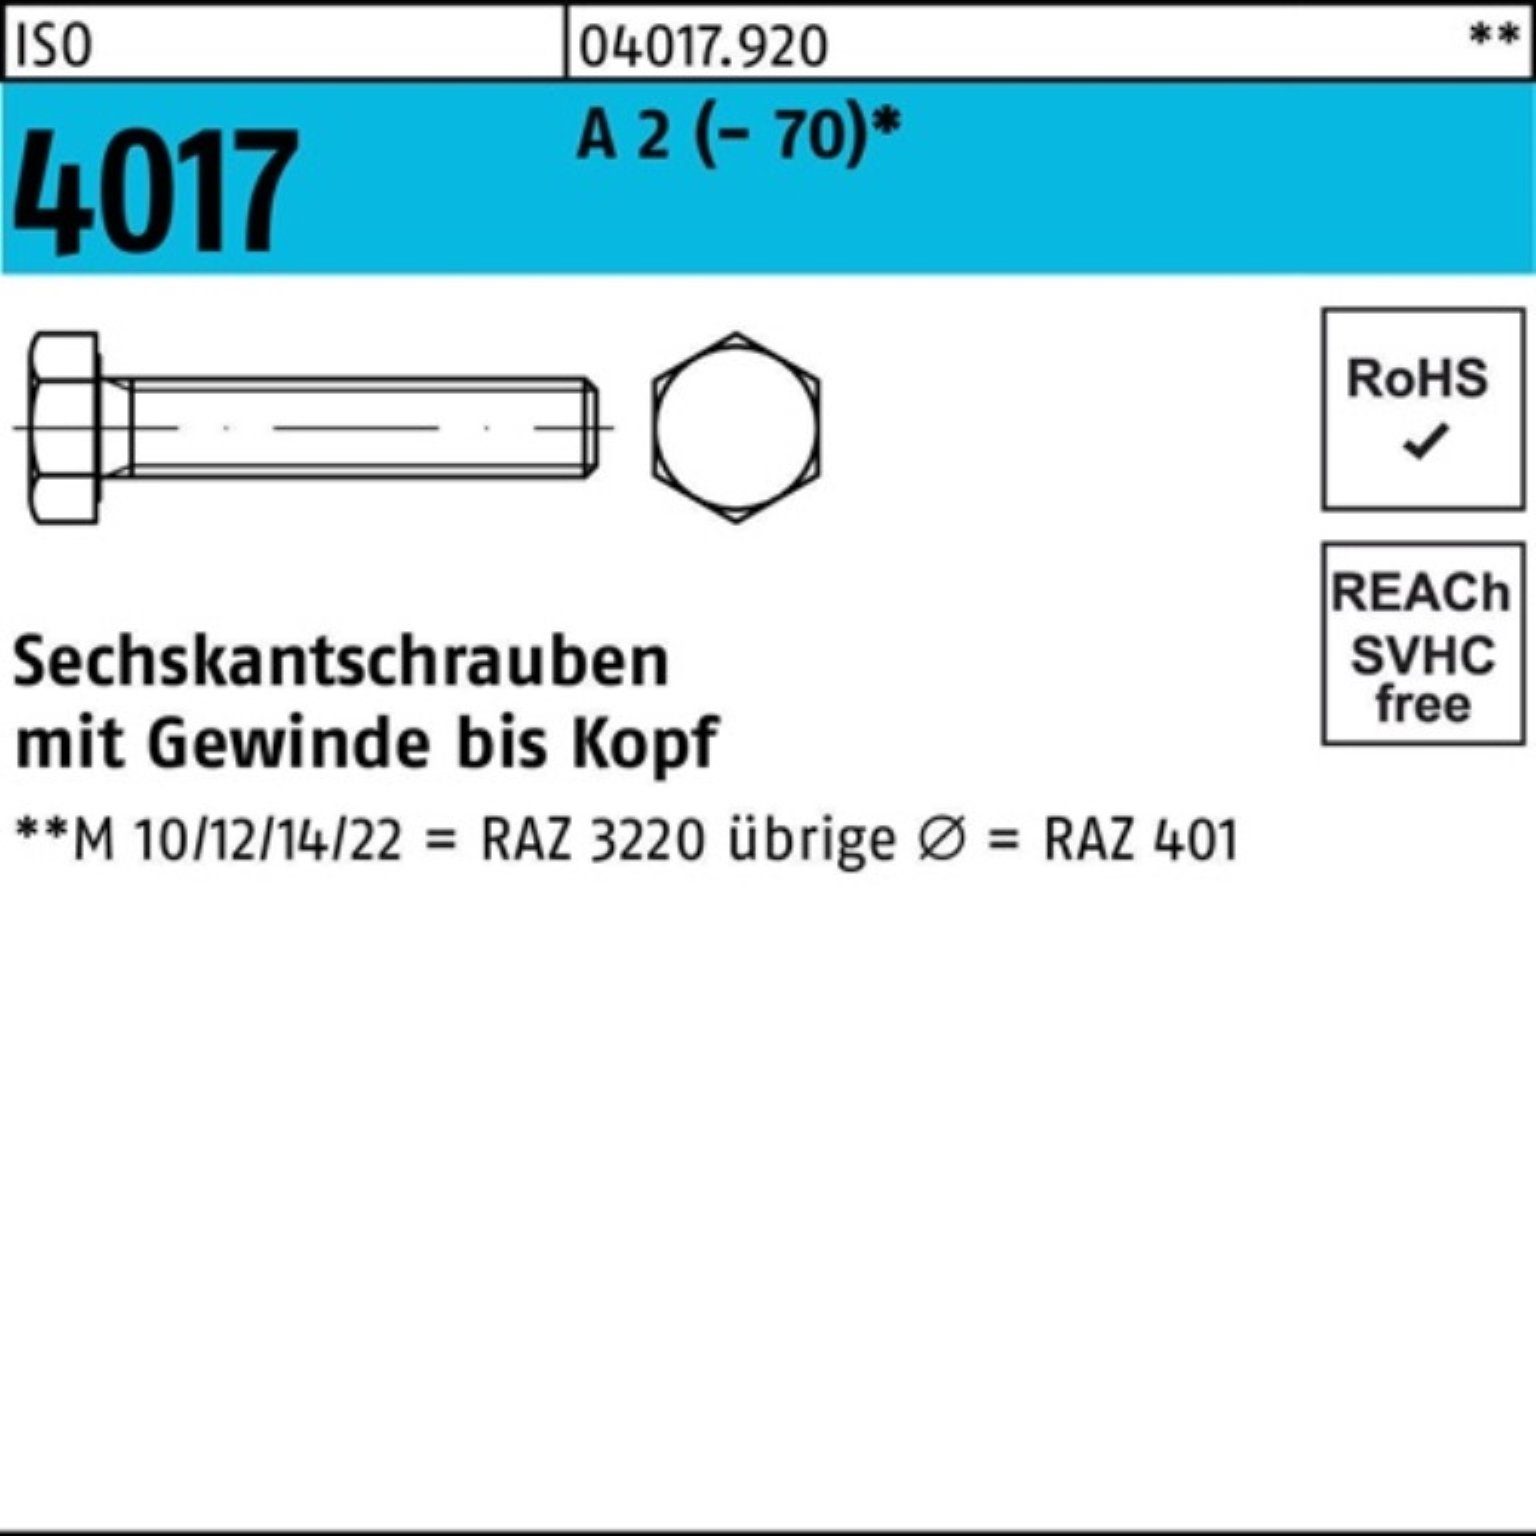 Bufab Sechskantschraube 100er A Pack ISO Sechskantschraube M22x (70) VG 30 4017 25 Stück 2